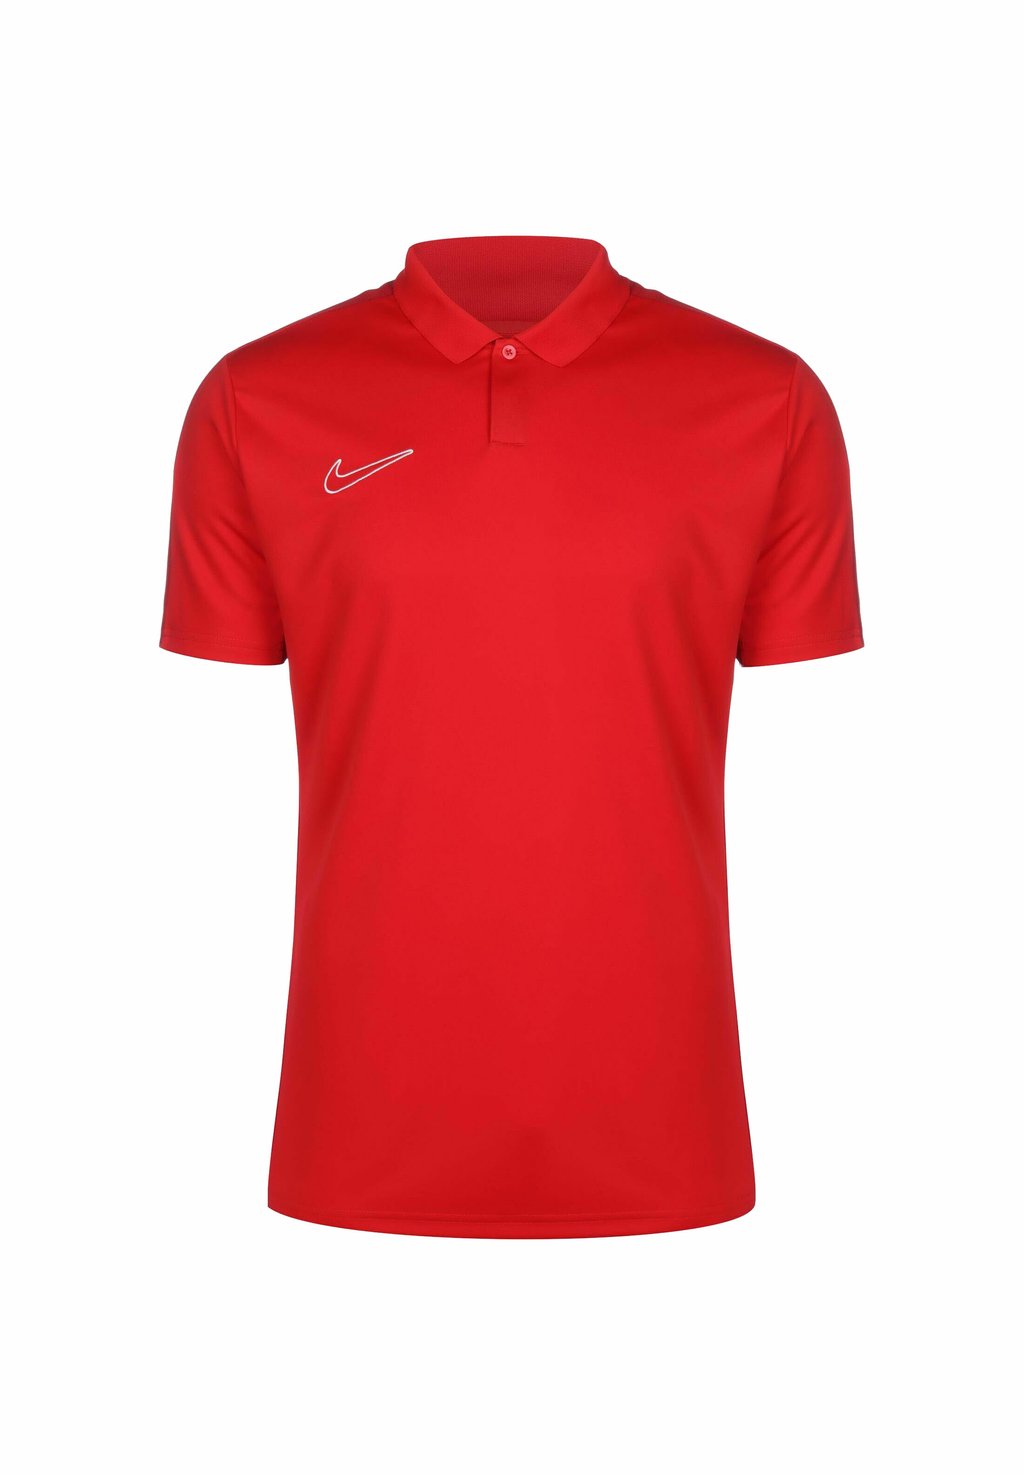 Поло Academy 23 Nike, цвет university red gym red white шорты nike woven hbr shorts цвет university red gym red white